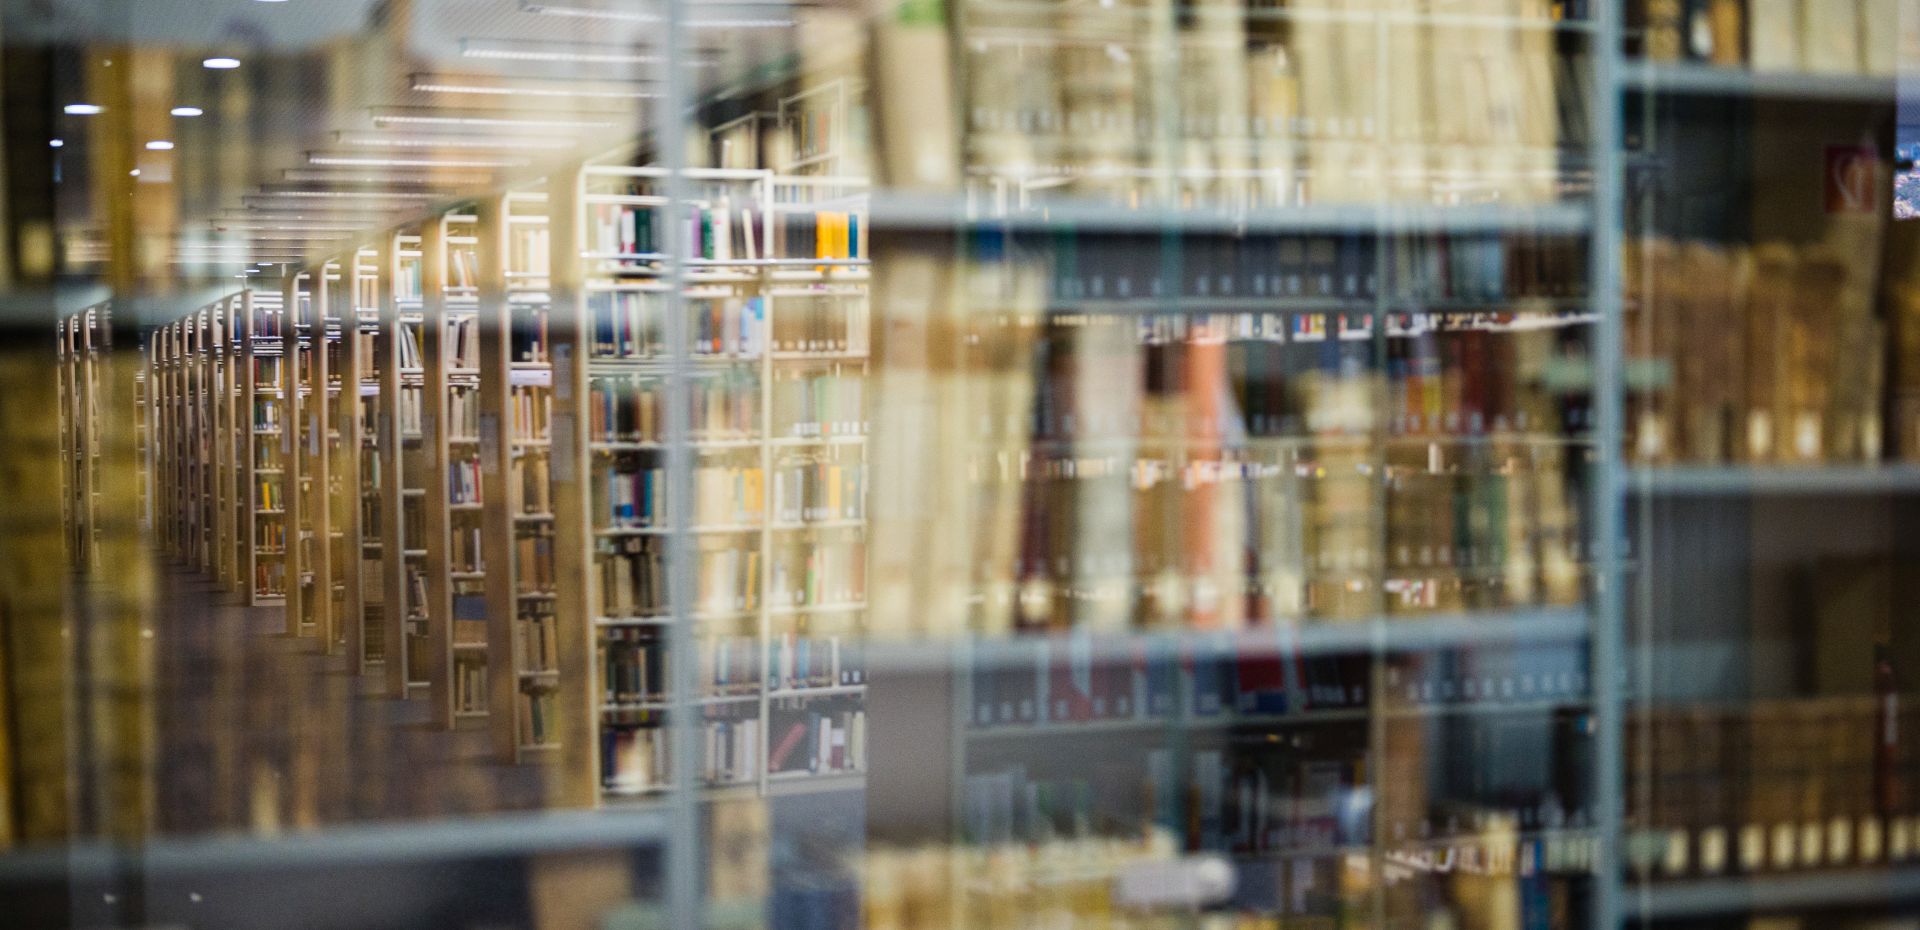 Spiegelung von Bücherregalen in einer Bibliothek